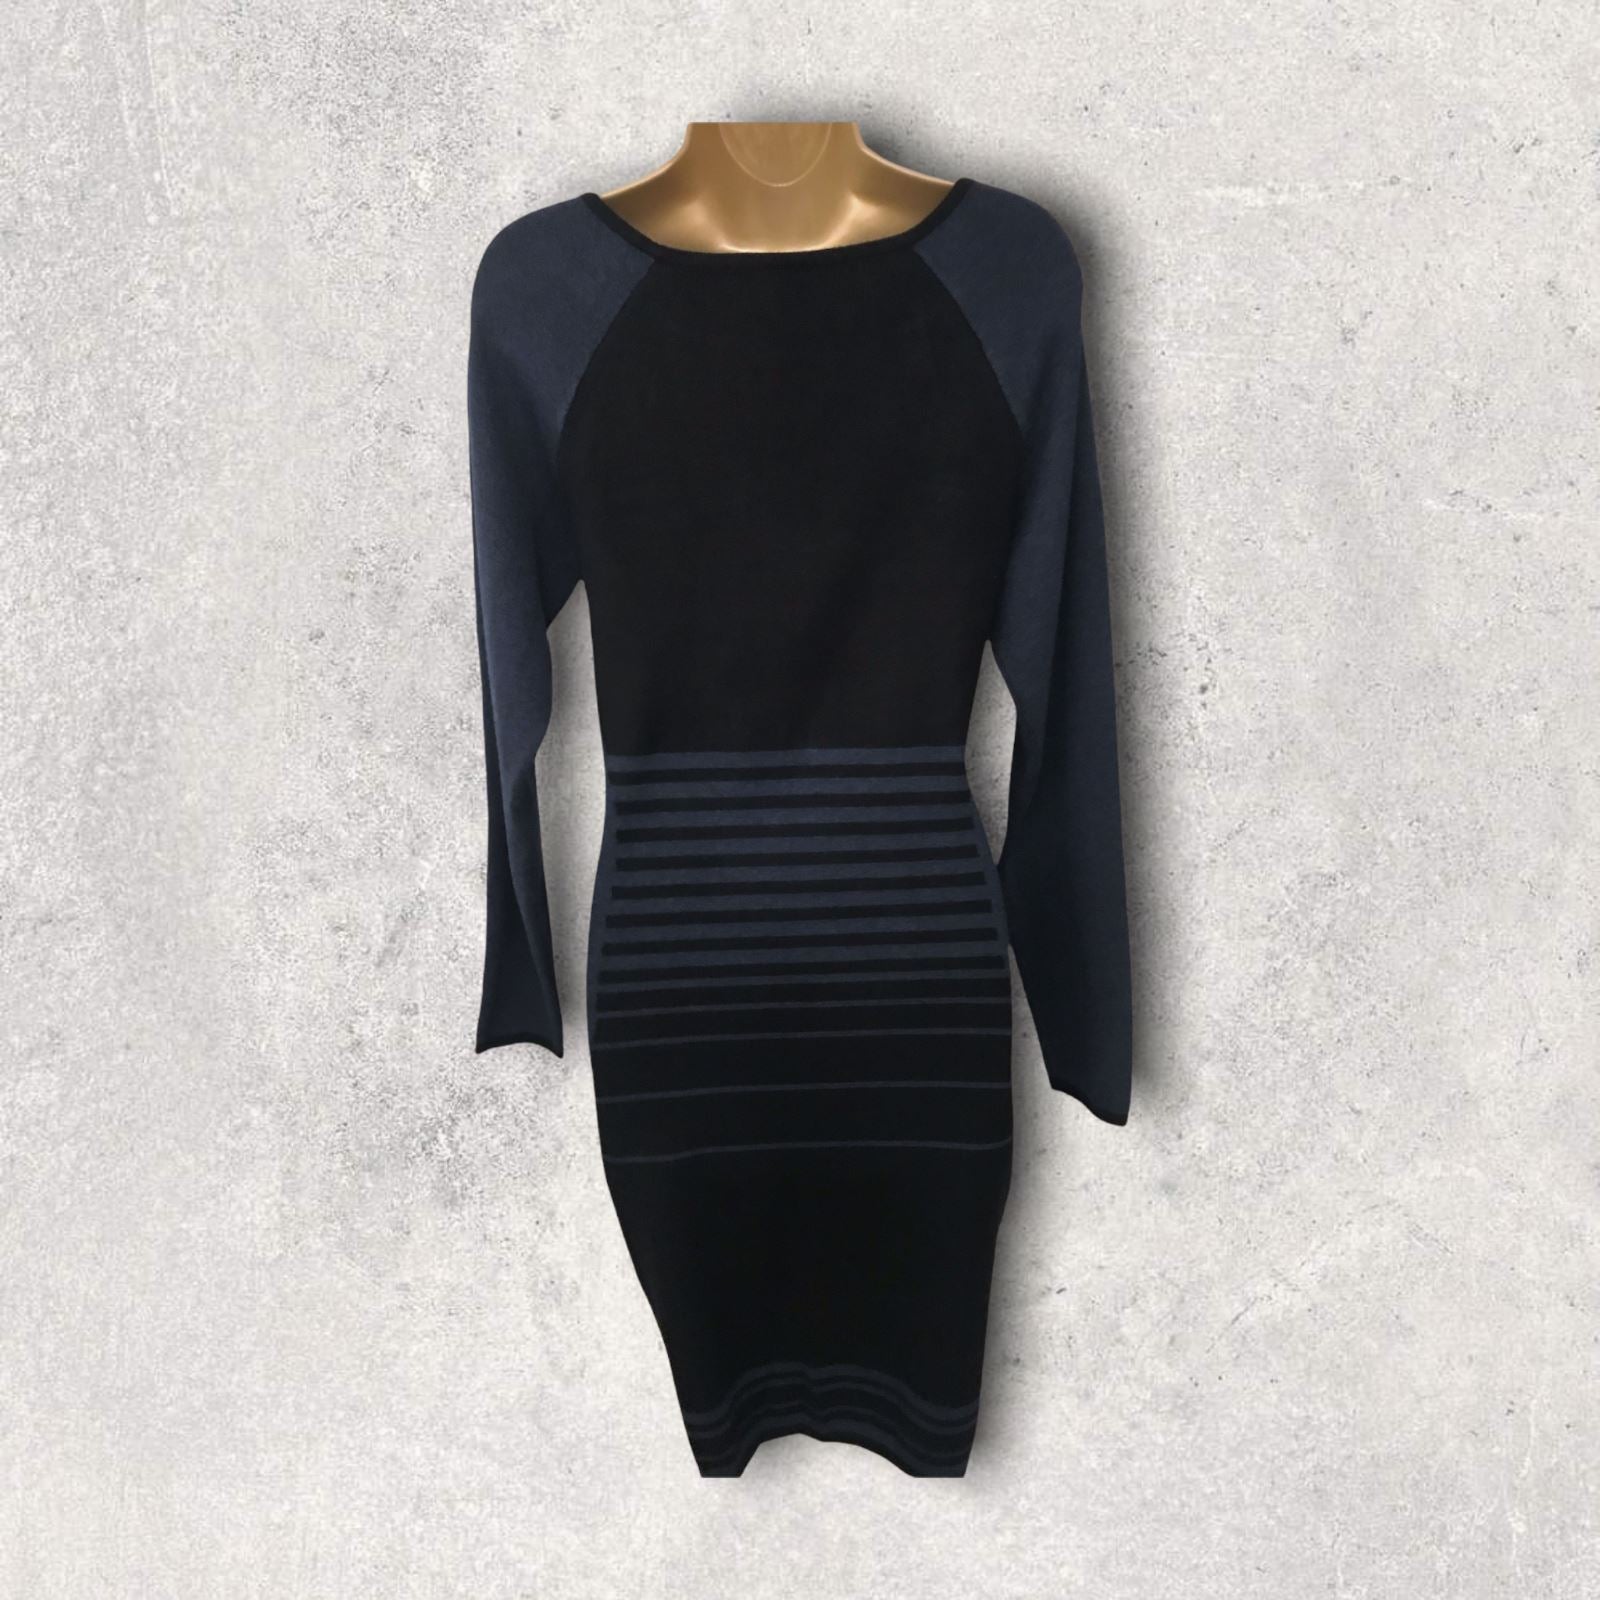 Max Studio Black & Navy Striped Jumper Dress Sz L UK 14 US 10 EU 42 BNWT Timeless Fashions